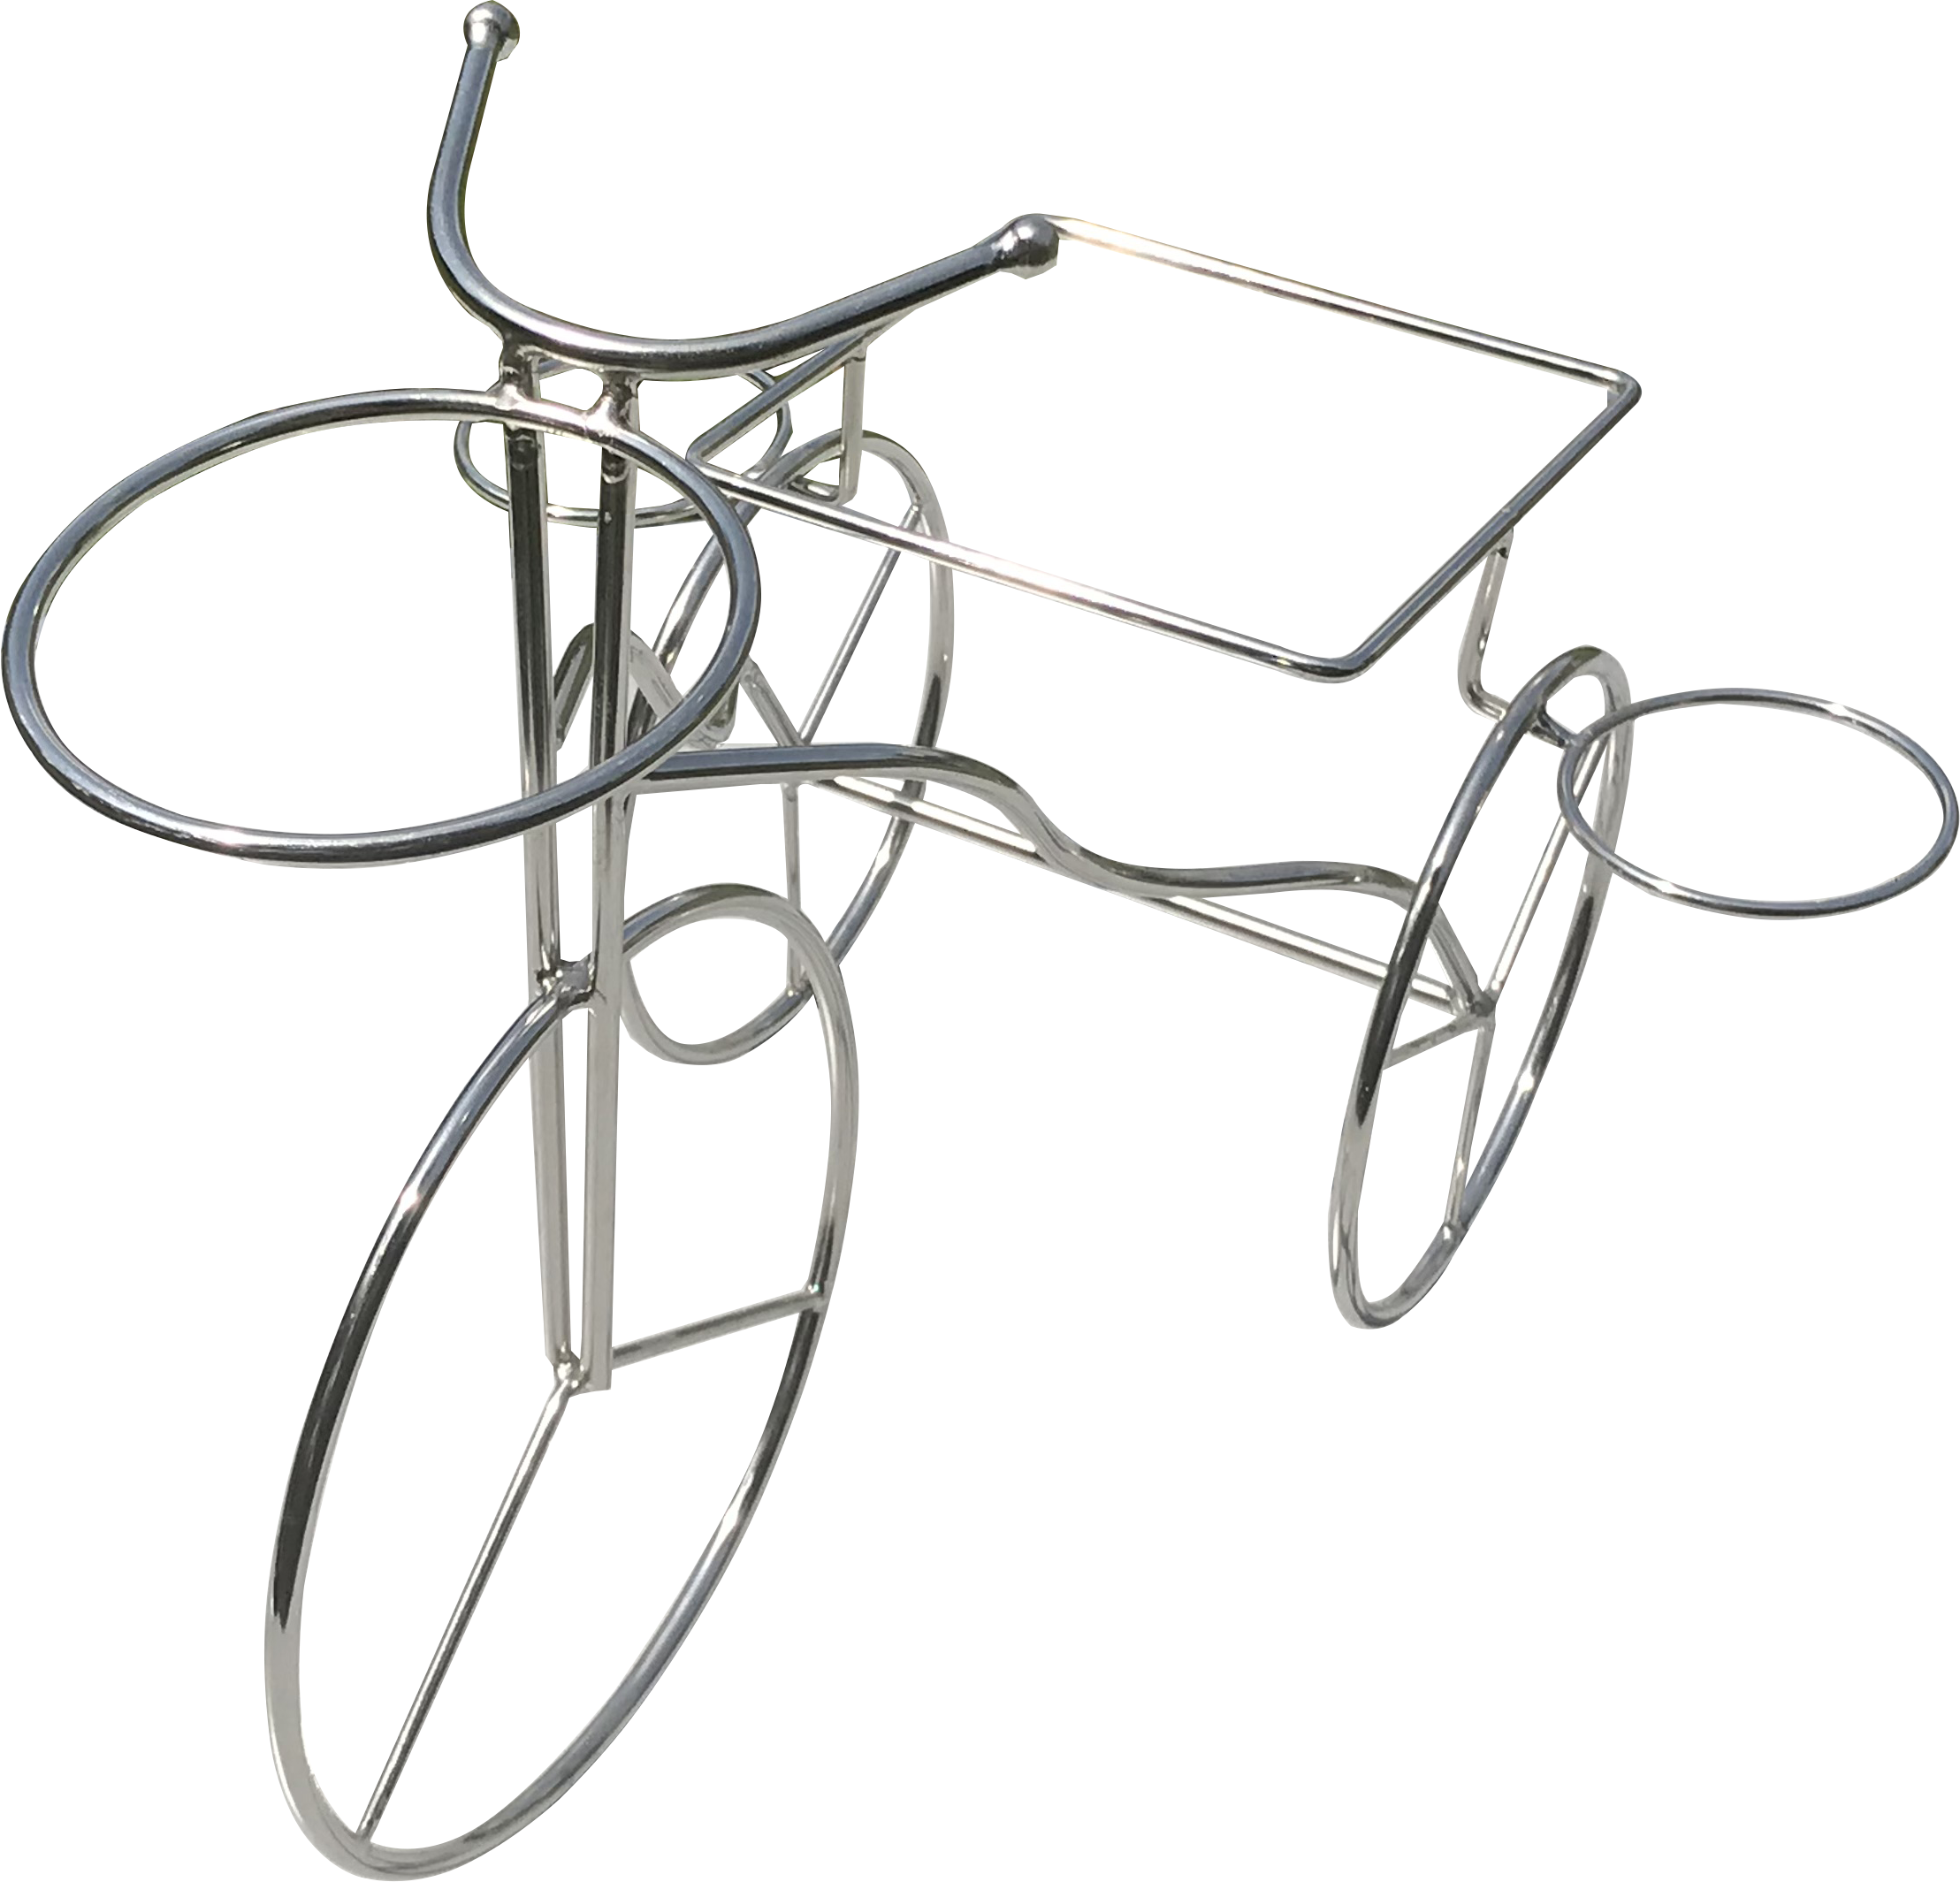 Diseño de bicicleta de alambre Mini Acero inoxidable Frisas Fritas Soporte para Restaurante Comida rápida Sirviendo Bandeja Cesta perforada